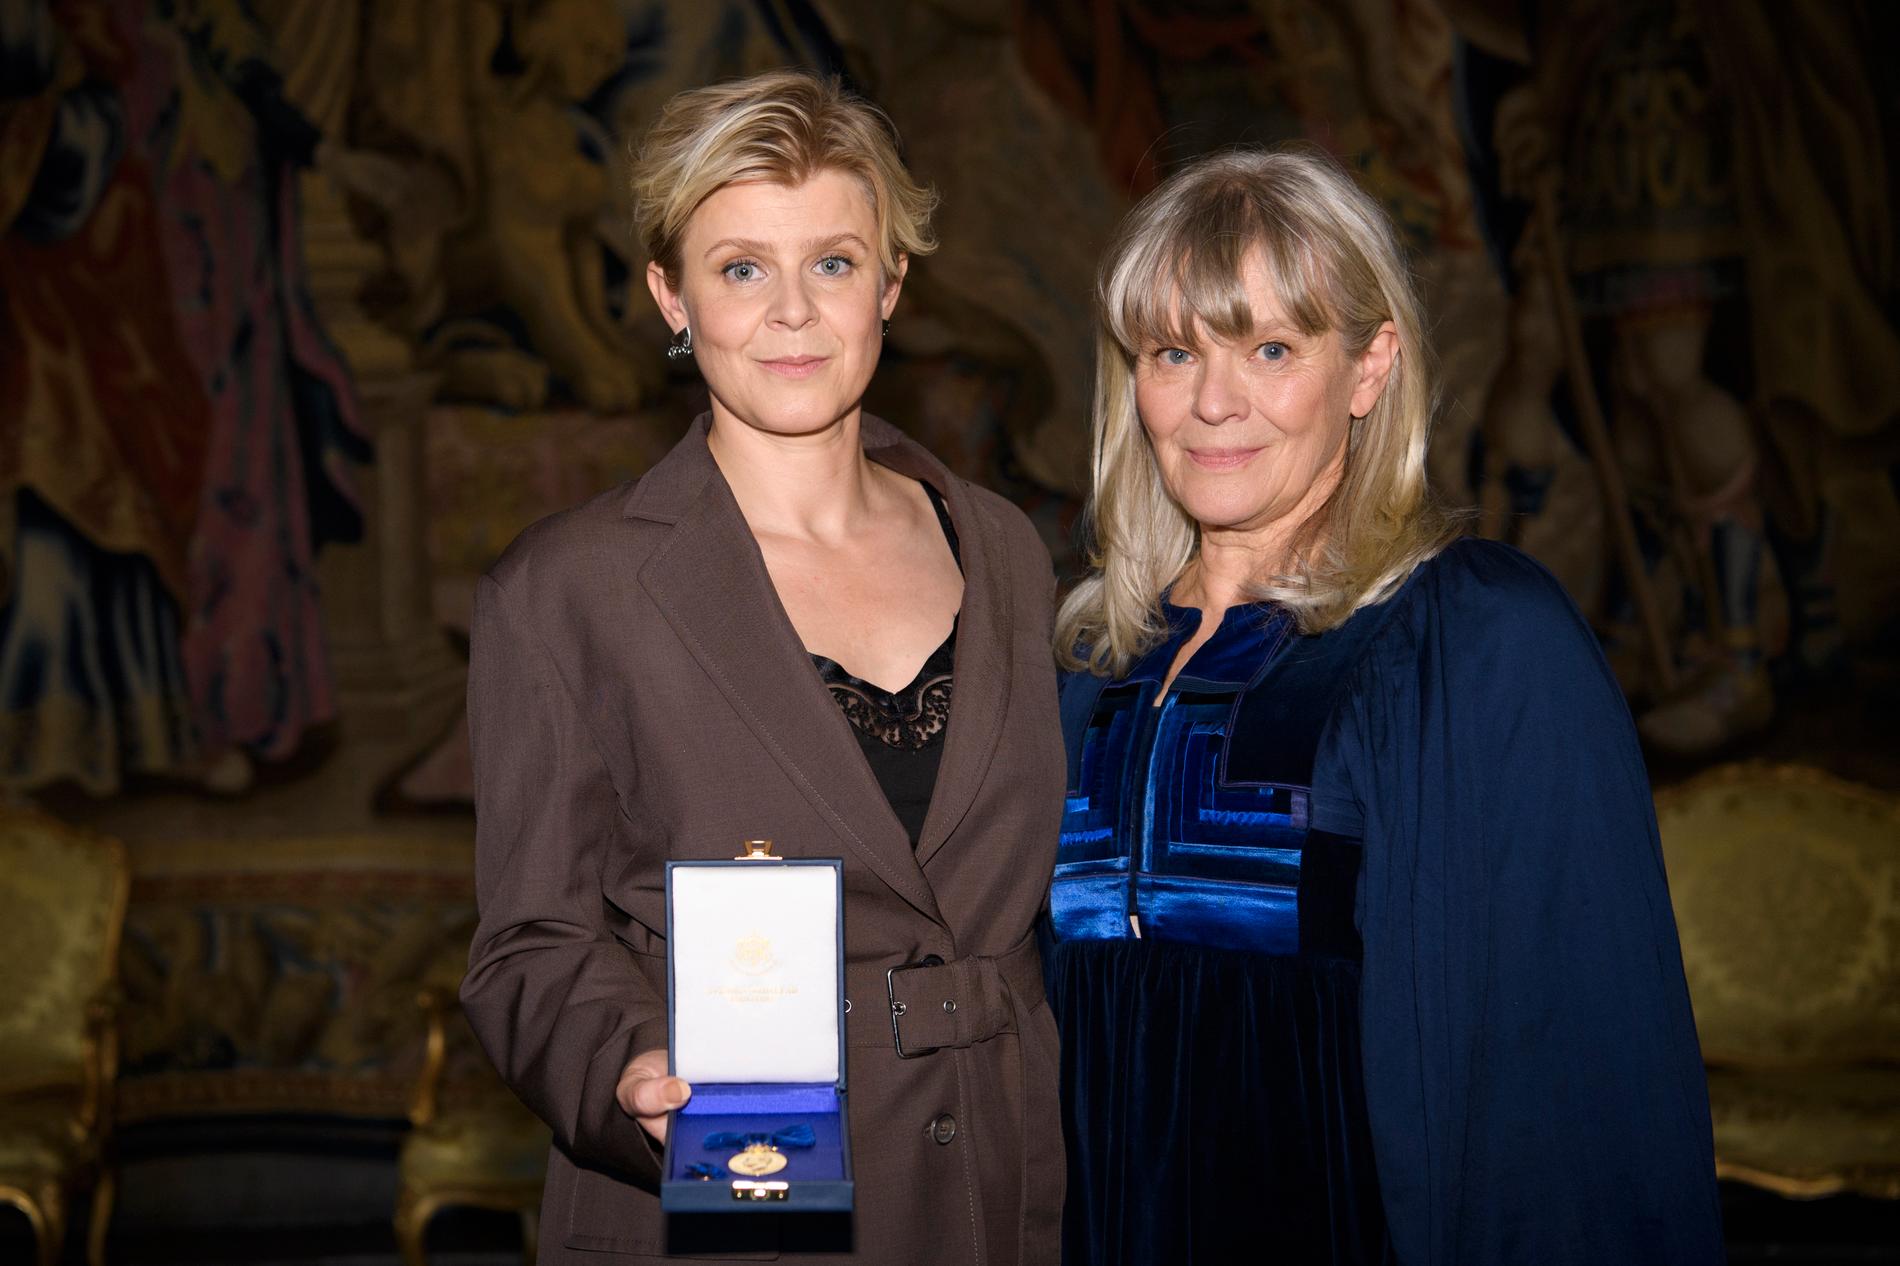 Robyn 2021 med HM kungens medalj i 8:e storleken för förtjänstfulla insatser som artist och låtskrivare. Här tillsammans med mamma Maria Ericson.